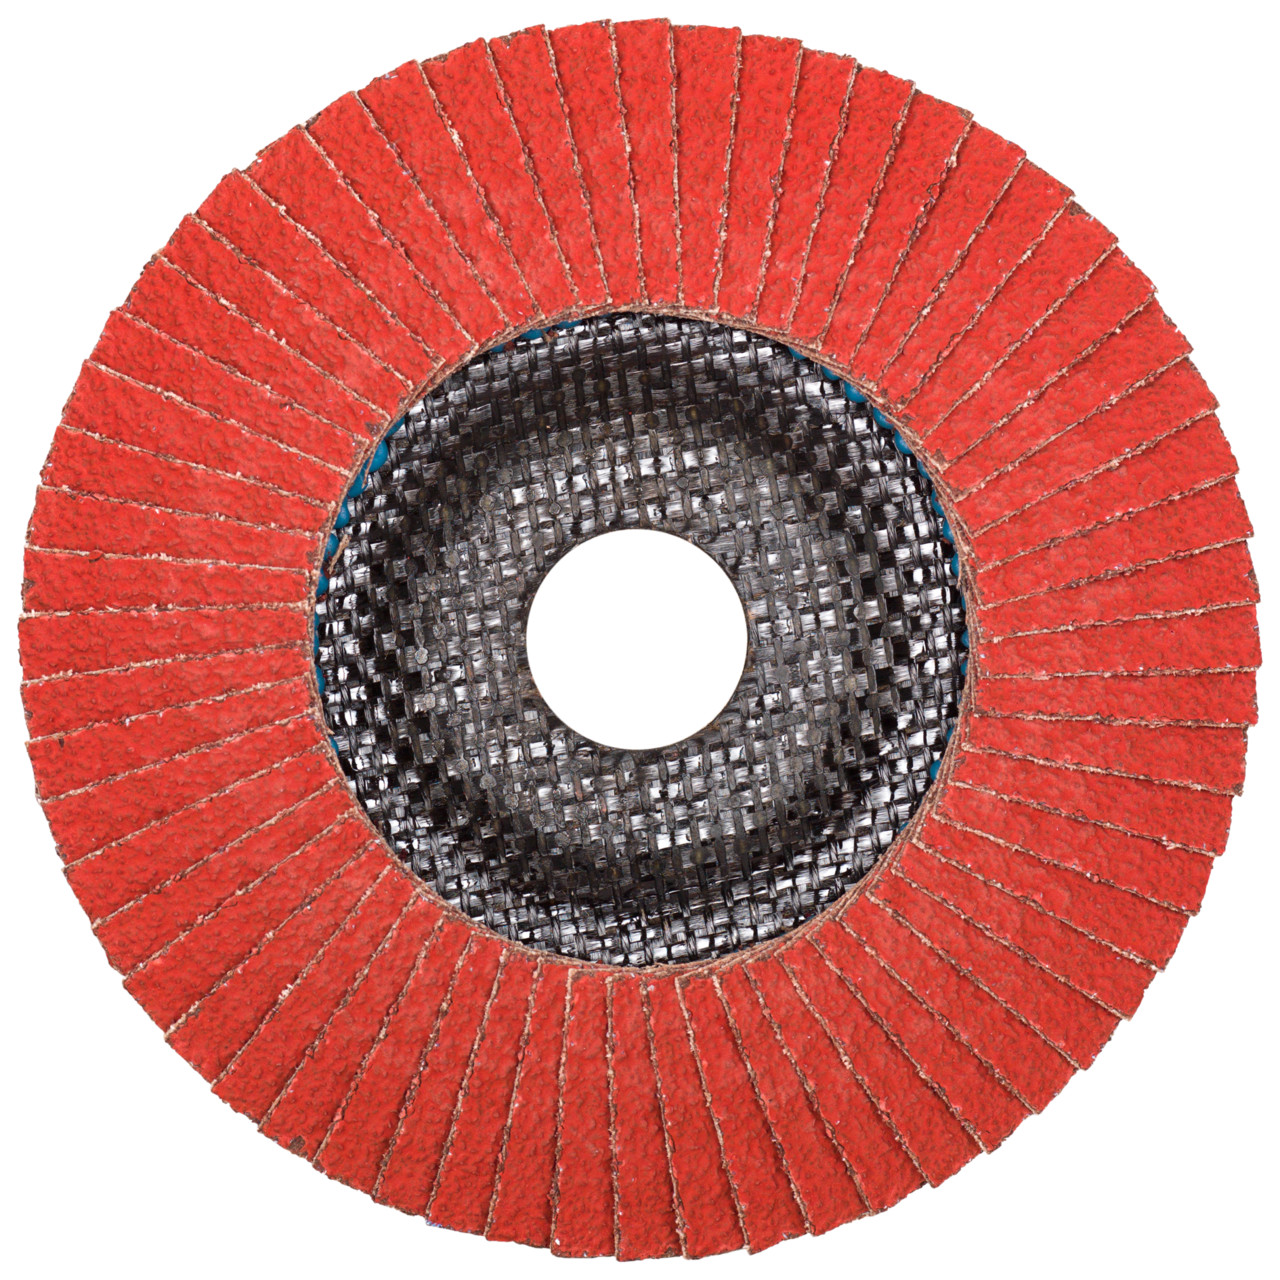 Tyrolit Gekartelde borgring DxH 125x22,23 CERABOND gekartelde borgring voor roestvrij staal, P60, vorm: 28A - rechte versie (glasvezeldragerhuisversie), Art. 34166176